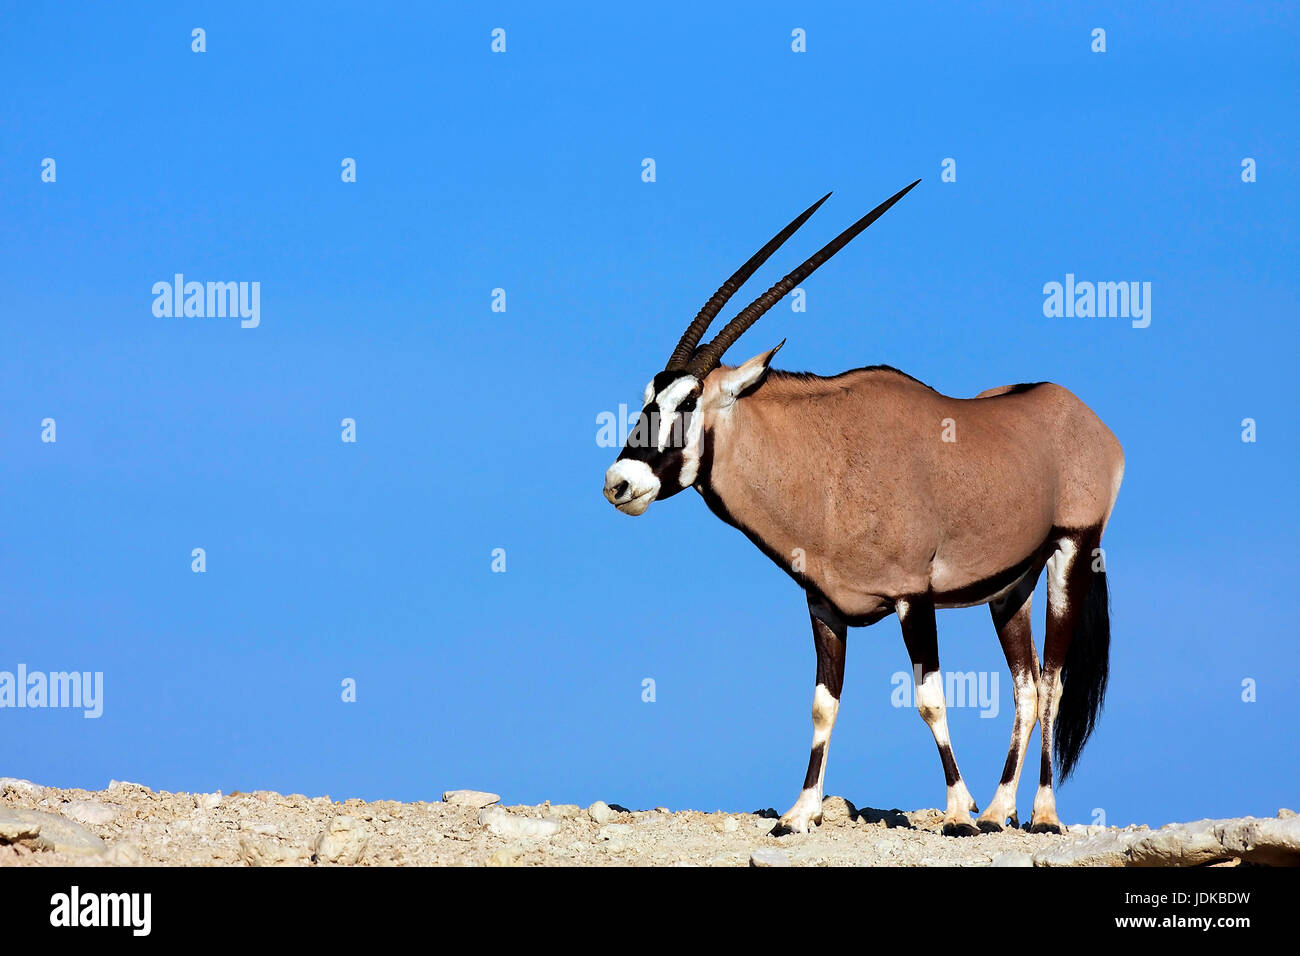 Oryx gazelle teht su una duna, Oryx Gazelle teht auf einer Duene Foto Stock